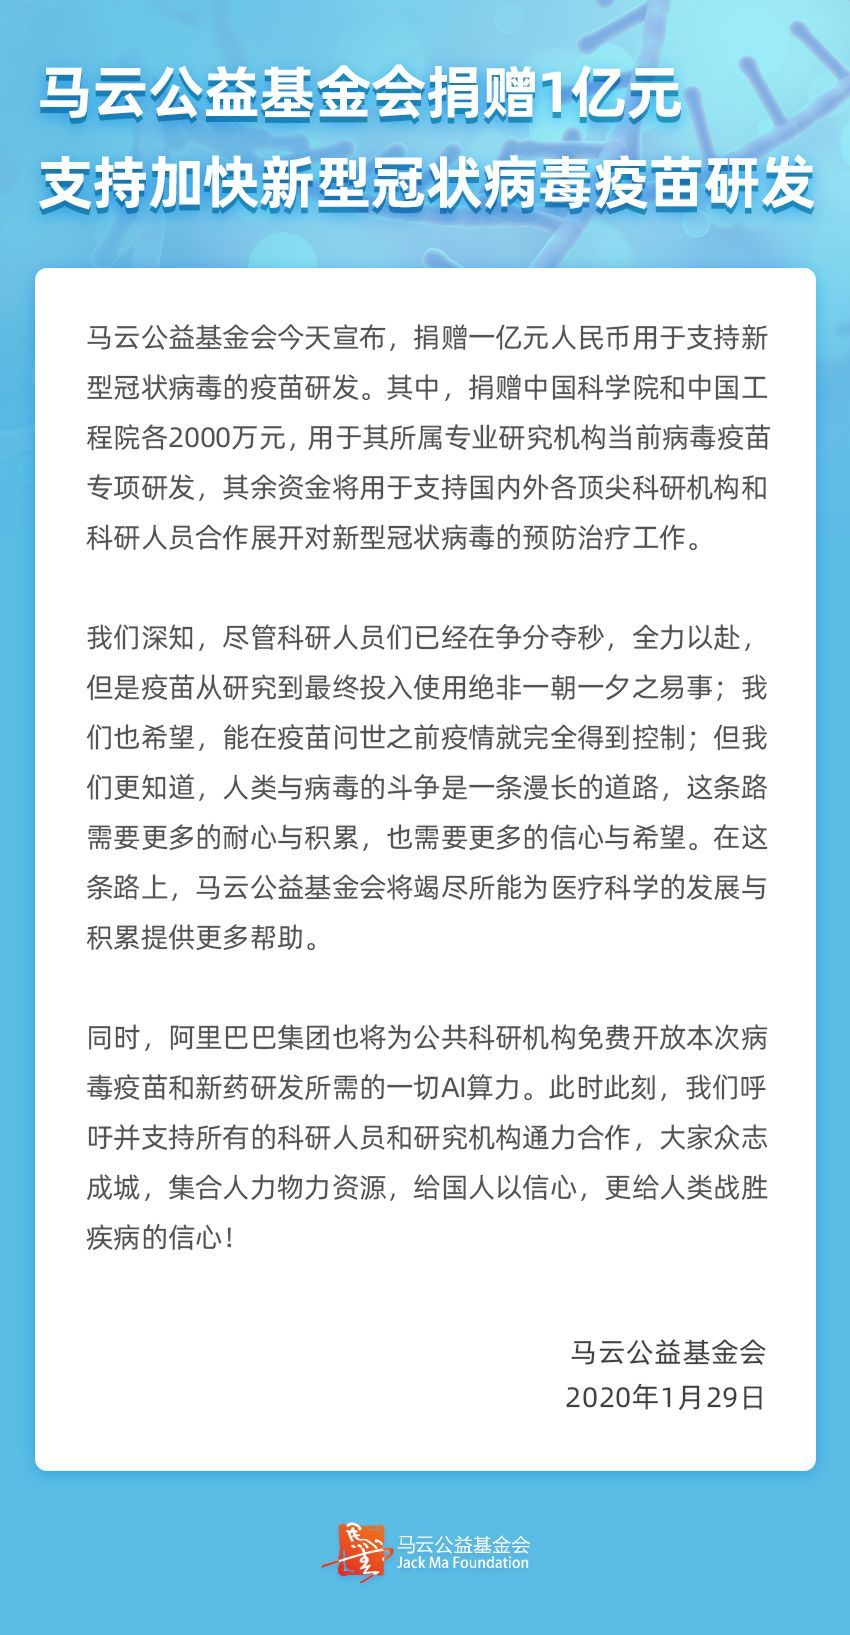 马云公益基金会捐赠1亿元 支持冠状病毒疫苗研发